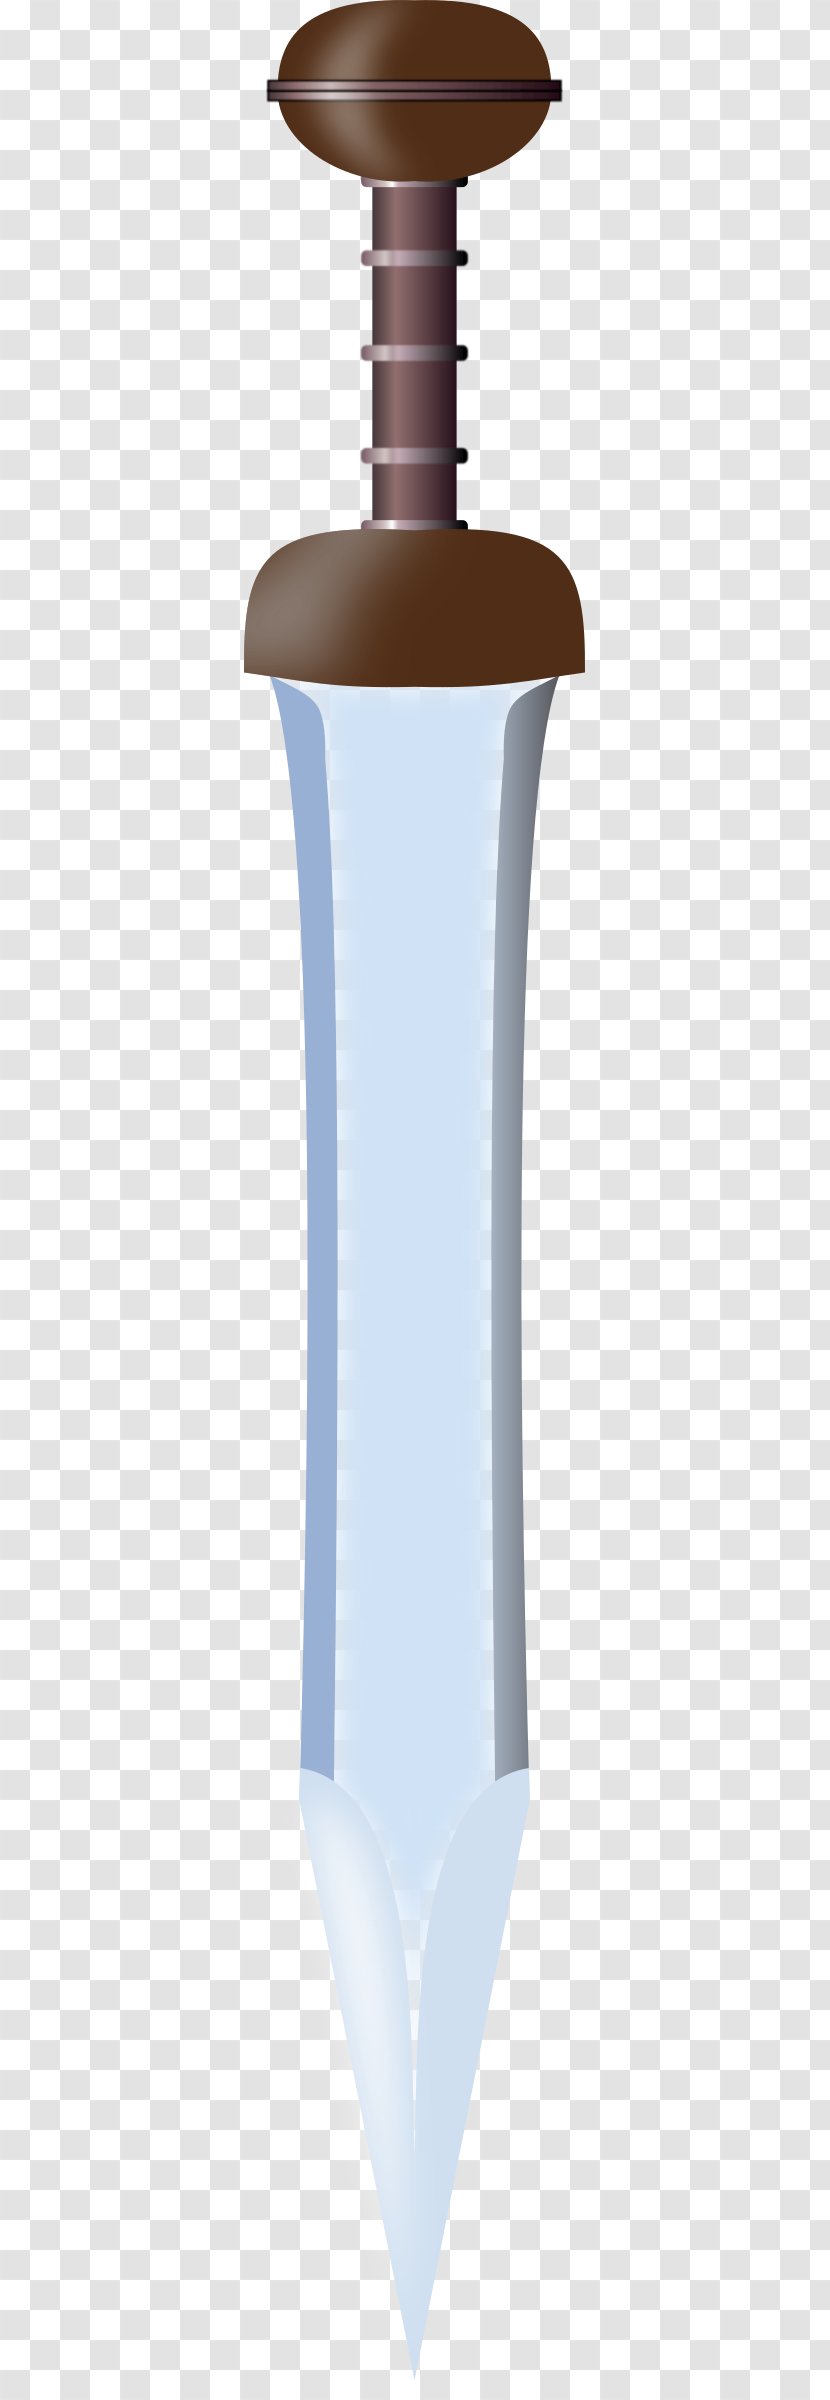 Clip Art - Droide - Sword Icon Transparent PNG